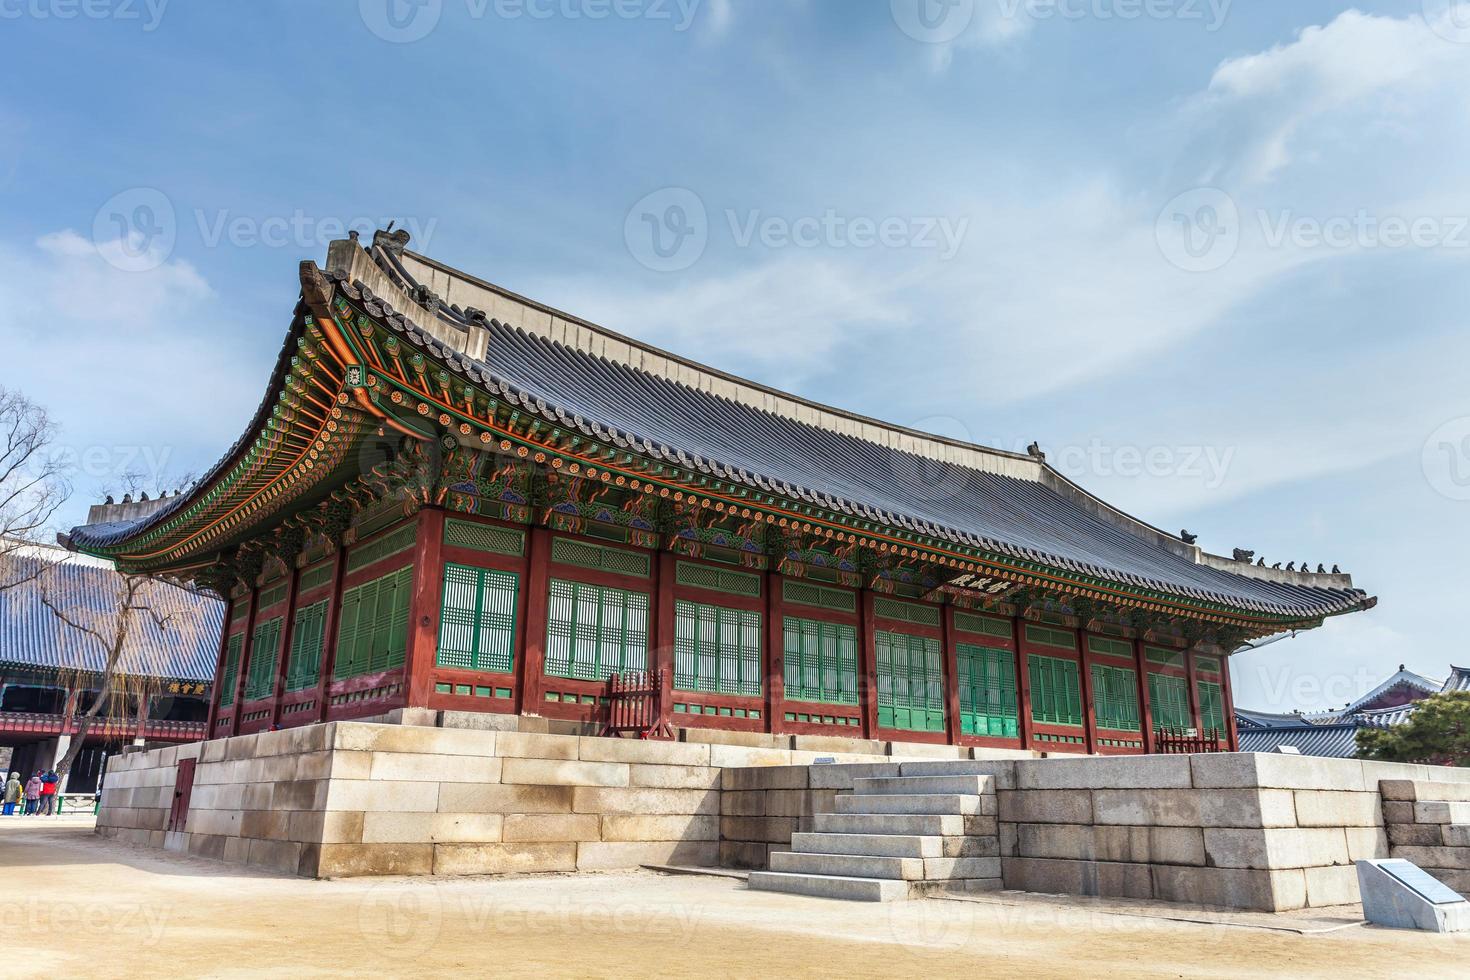 palácio gyeongbokgung em seoul, coreia do sul foto